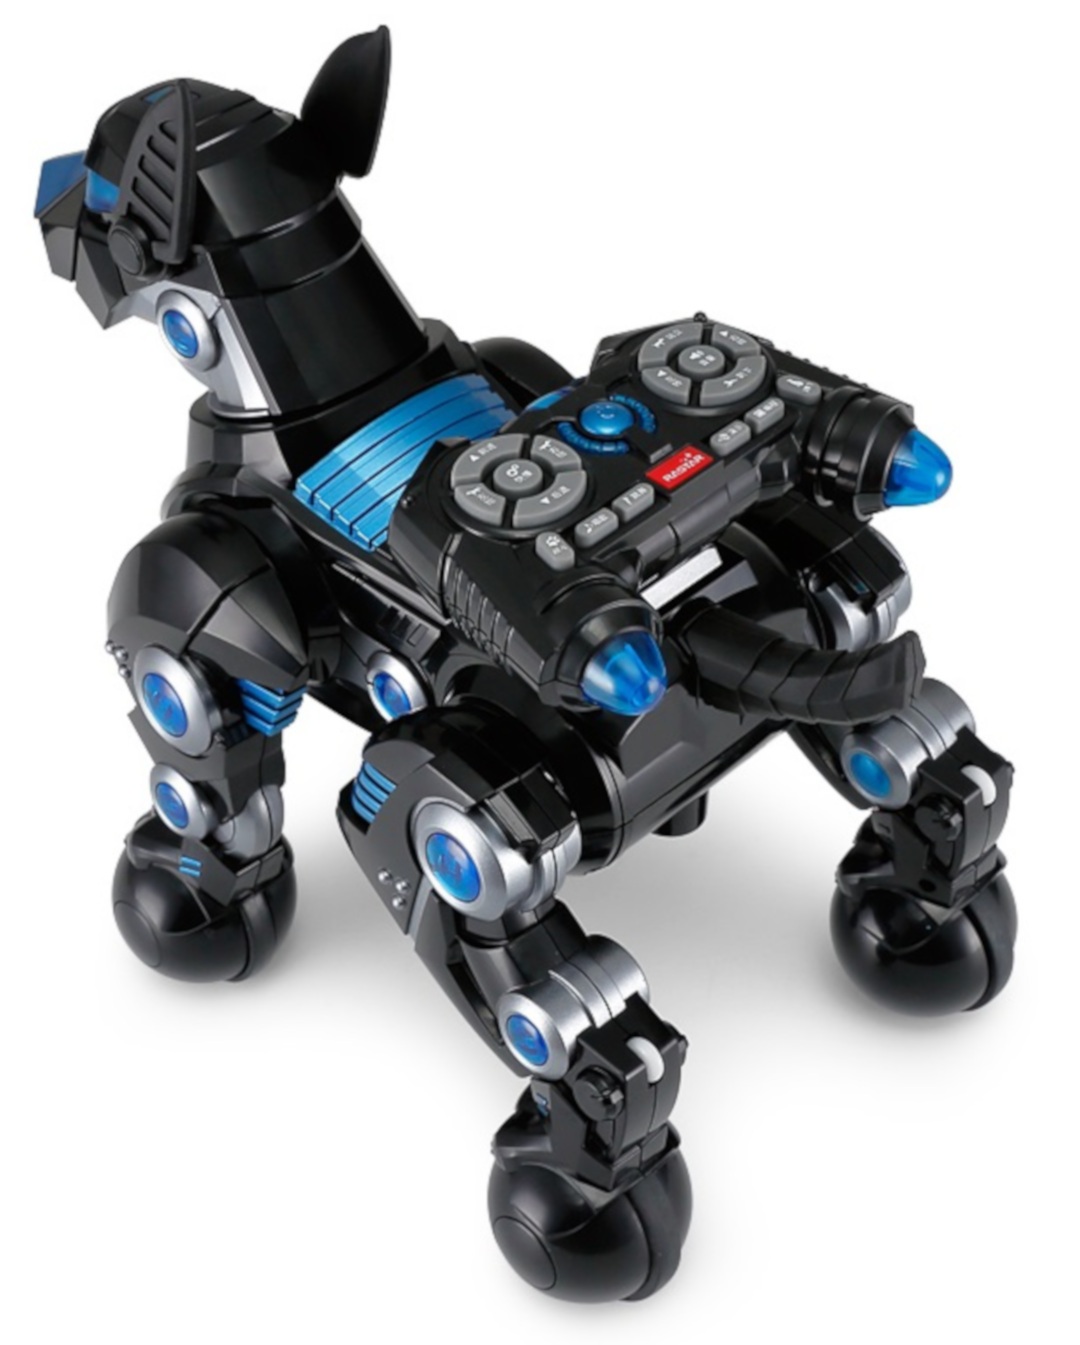 Pies DOGO Rastar - Interaktywny robot pies 1:14 - czarny